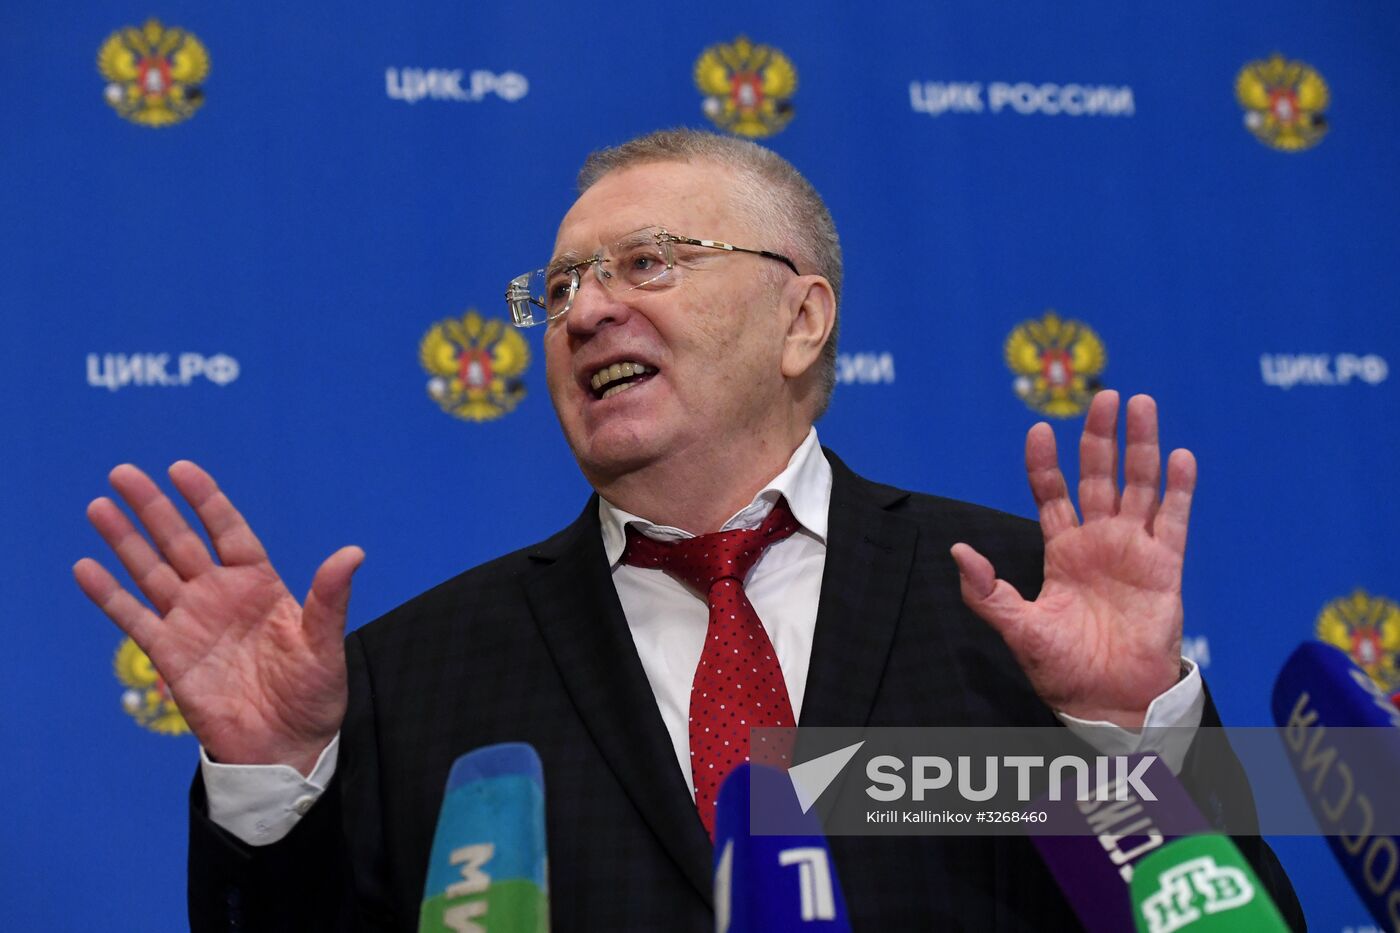 Vladimir Zhirinovsky is registered to run for president